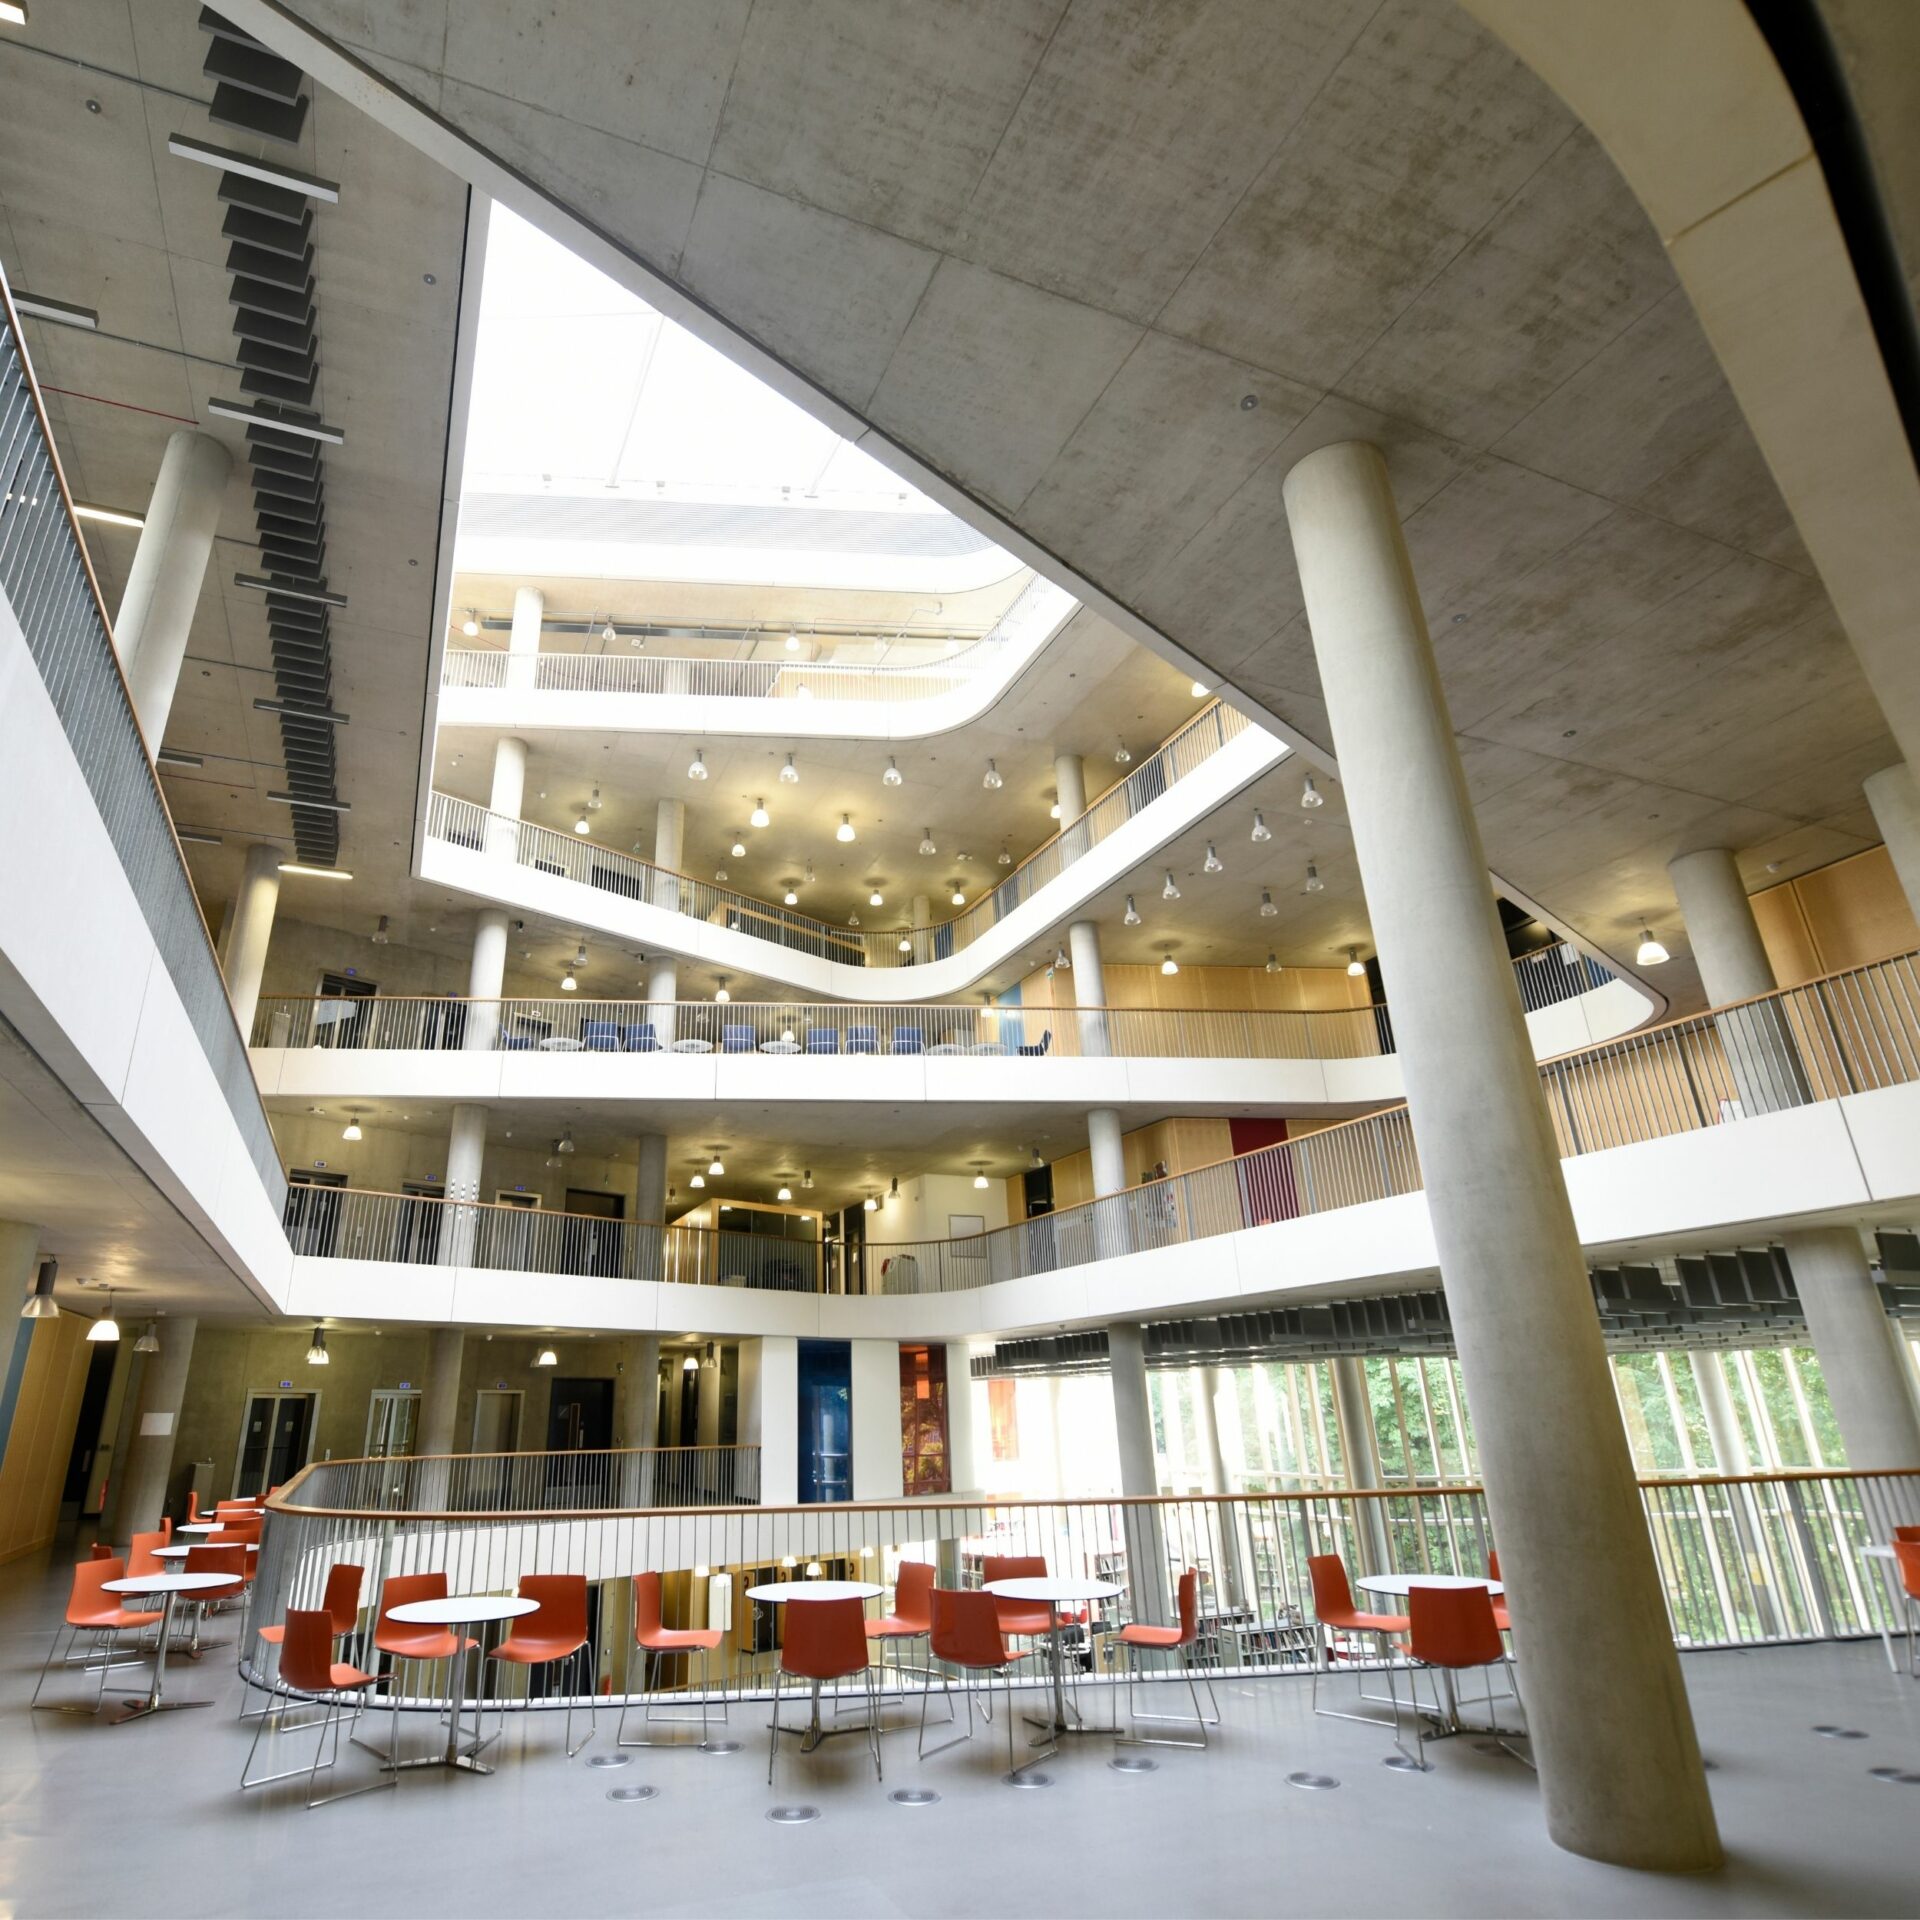 atrium architecture of university building